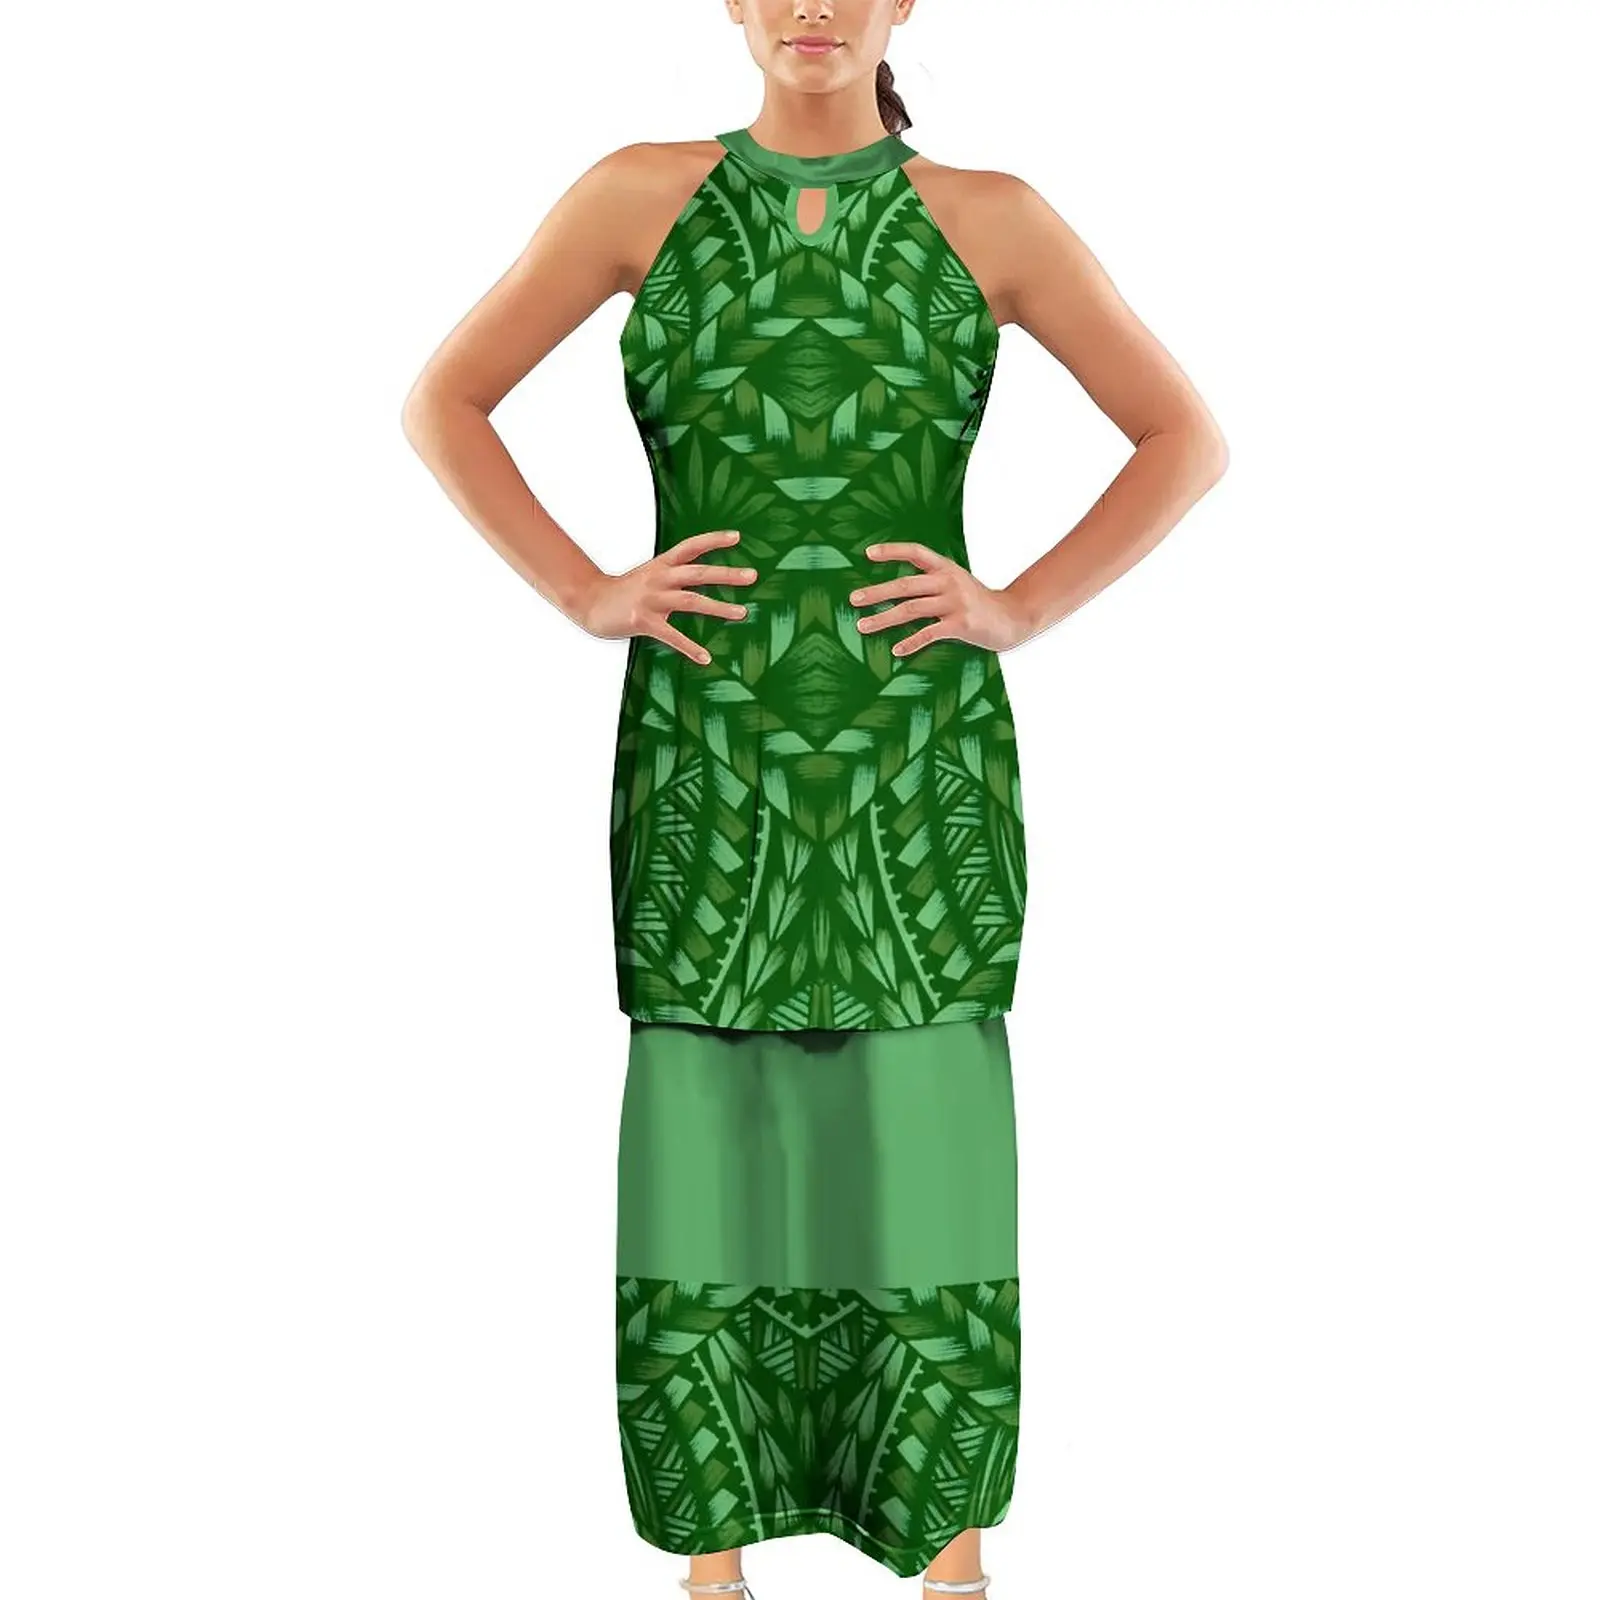 2022 여름 녹색 민소매 저녁 식사 드레스 폴리네시아 사모아 디자인 Puletas 드레스 큰 크기 7XL 큰 사람들 탑 스커트 2 조각 세트